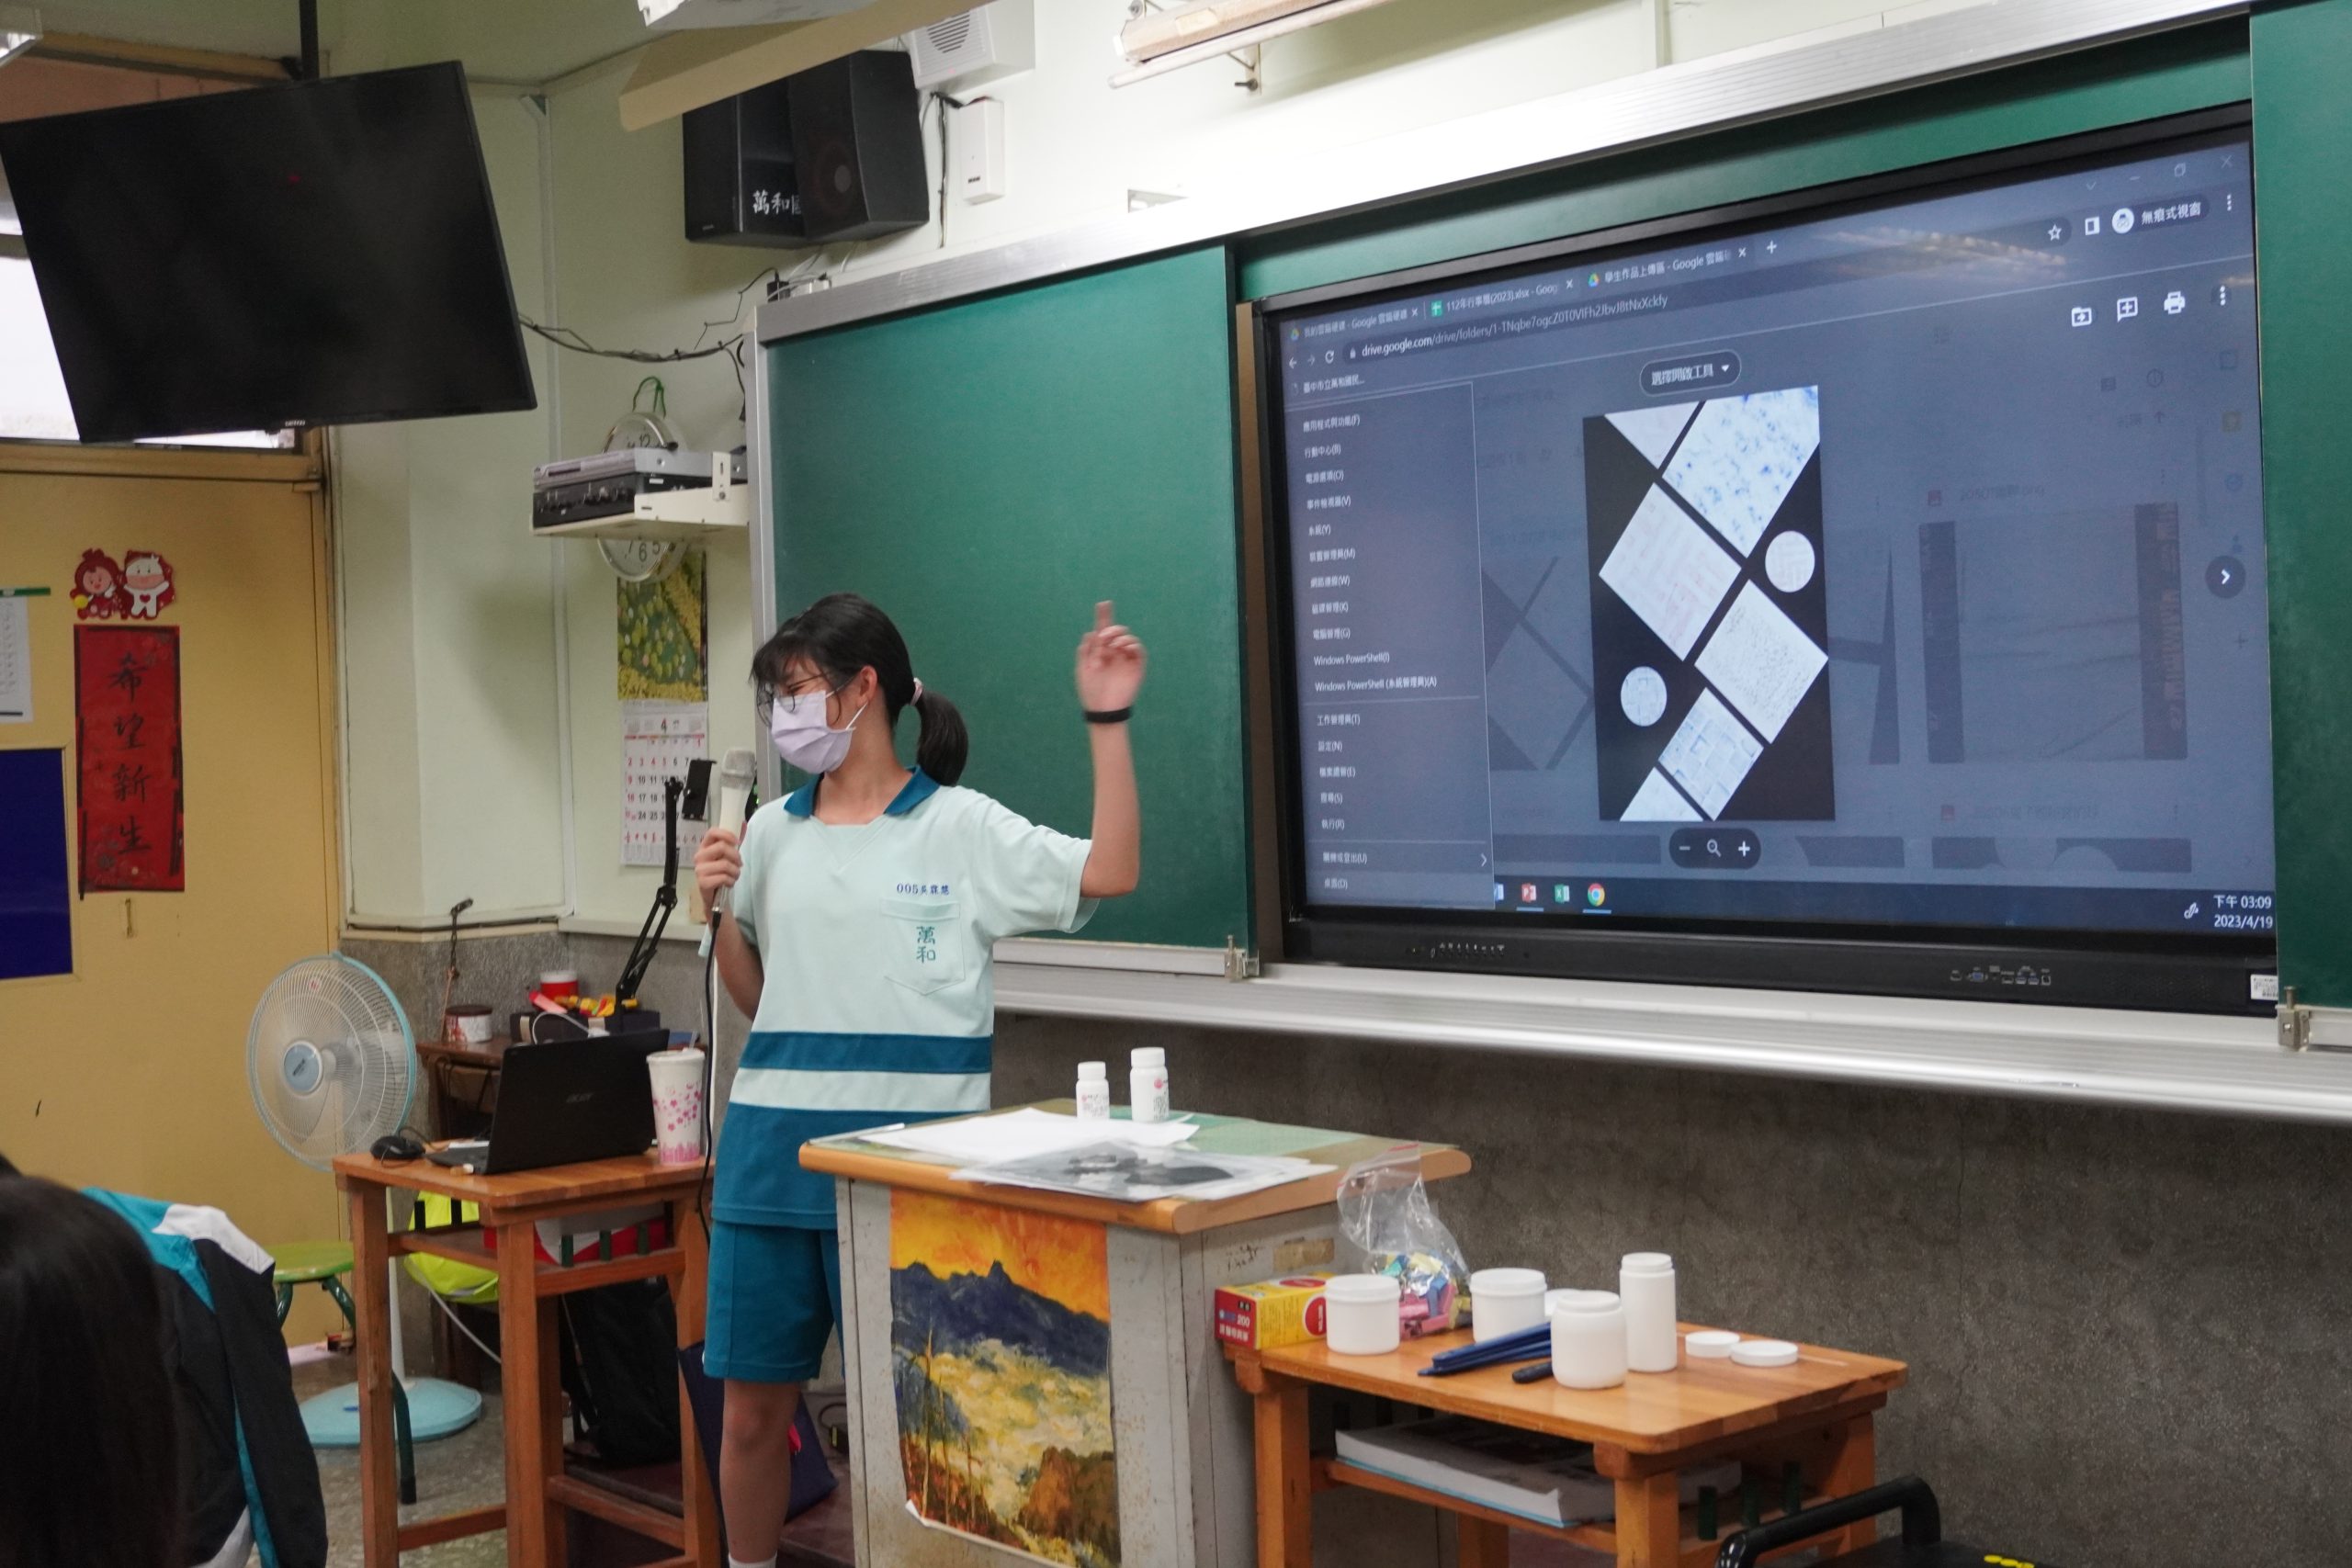 111學年度第二學期於臺中市立萬和國民中學施辦自拍拼圖課程實作紀錄系列照片共24張